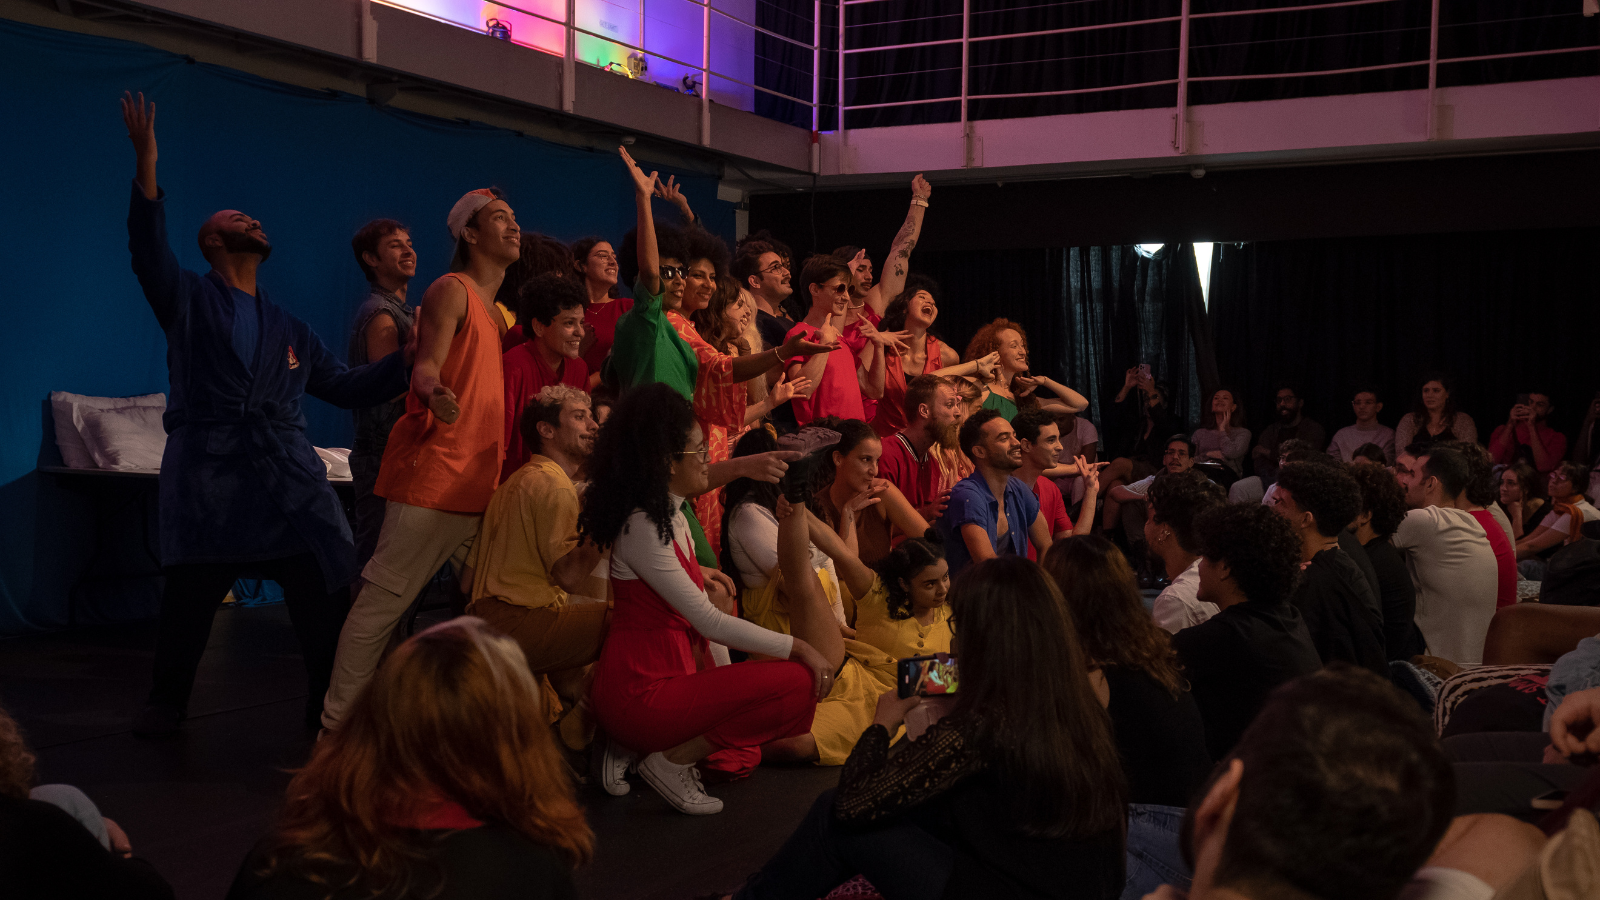 Fotografia colorida mostrando os integrantes do curso de extensão cultural de "Teatro Musical" em apresentação no encerramento